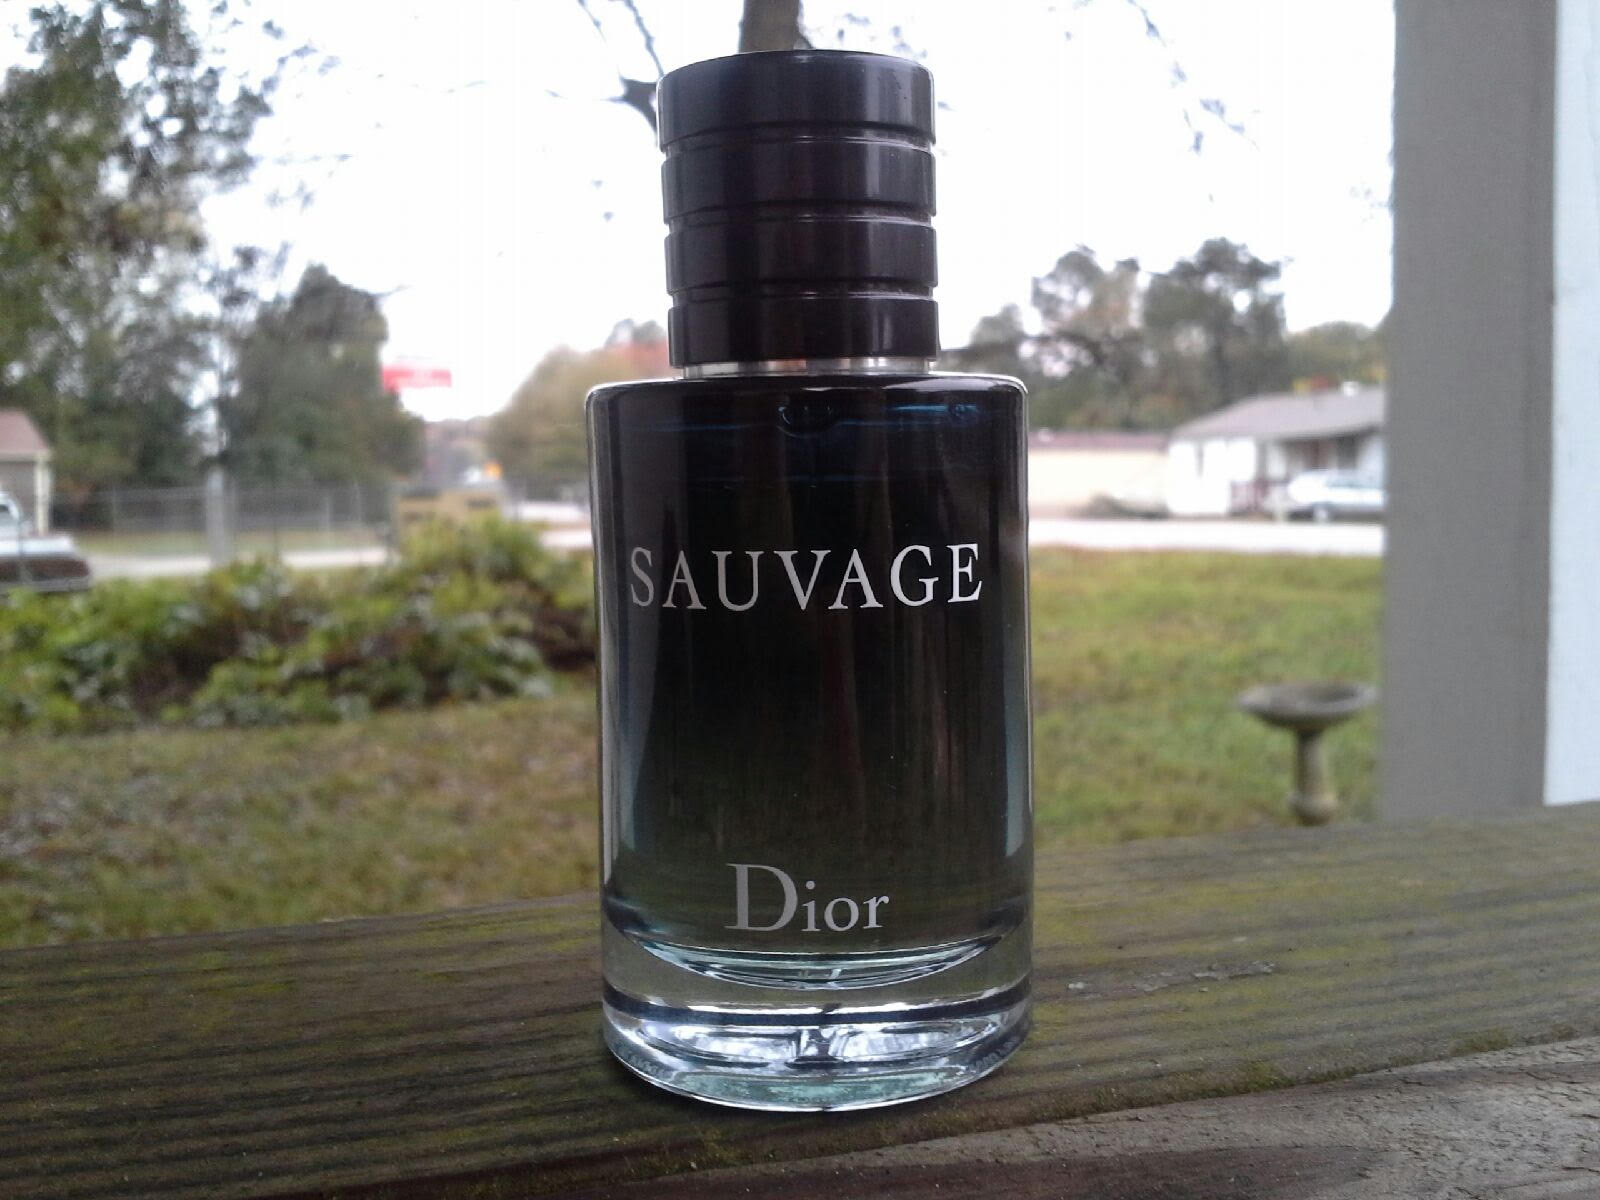 sauvage dior reviews